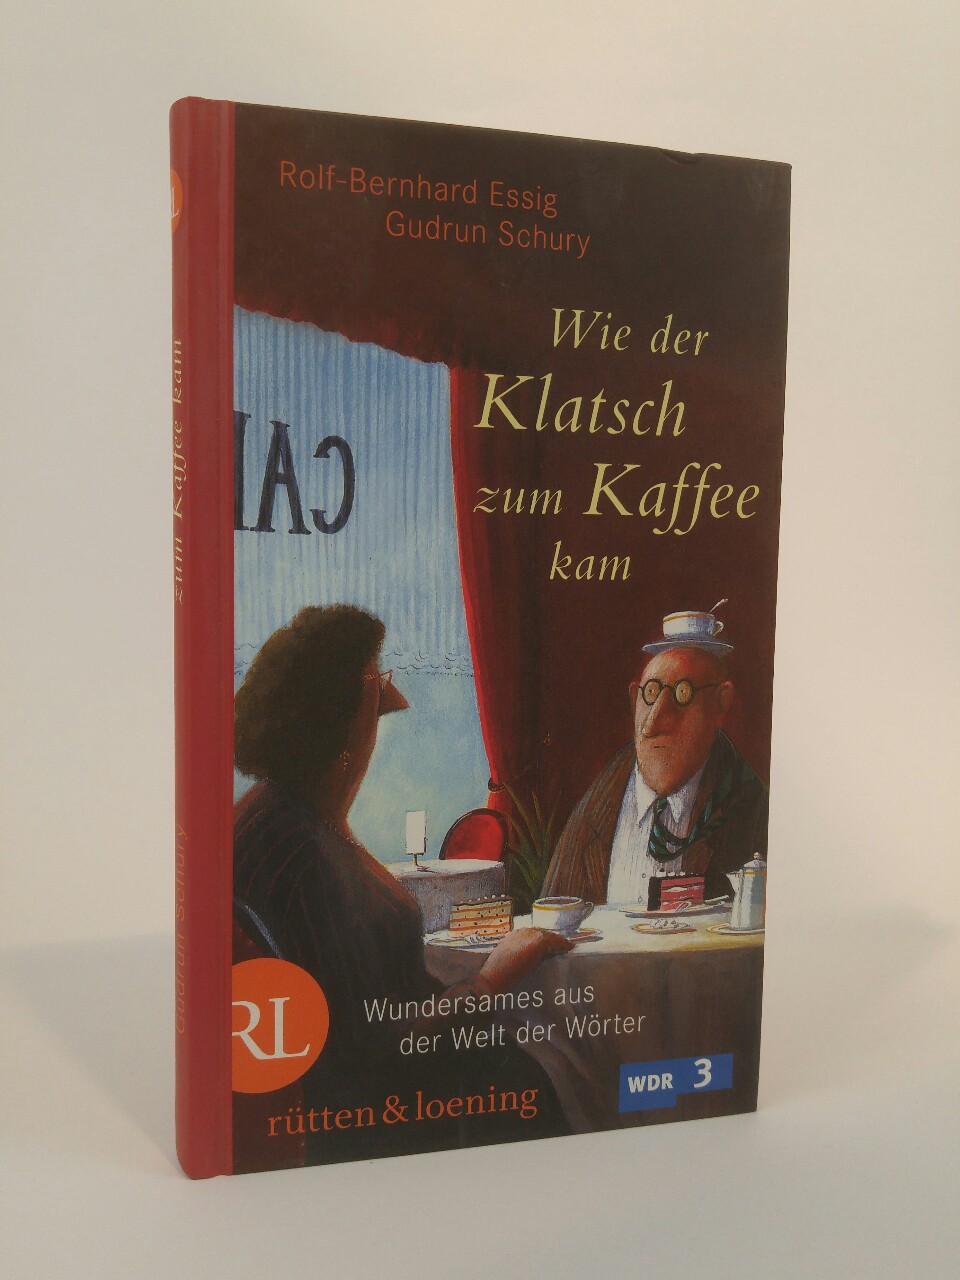 Wie der Klatsch zum Kaffee kam [Neubuch] Wundersames aus der Welt der Wörter 1. Auflage - Schury, Gudrun und Rolf-Bernhard Essig